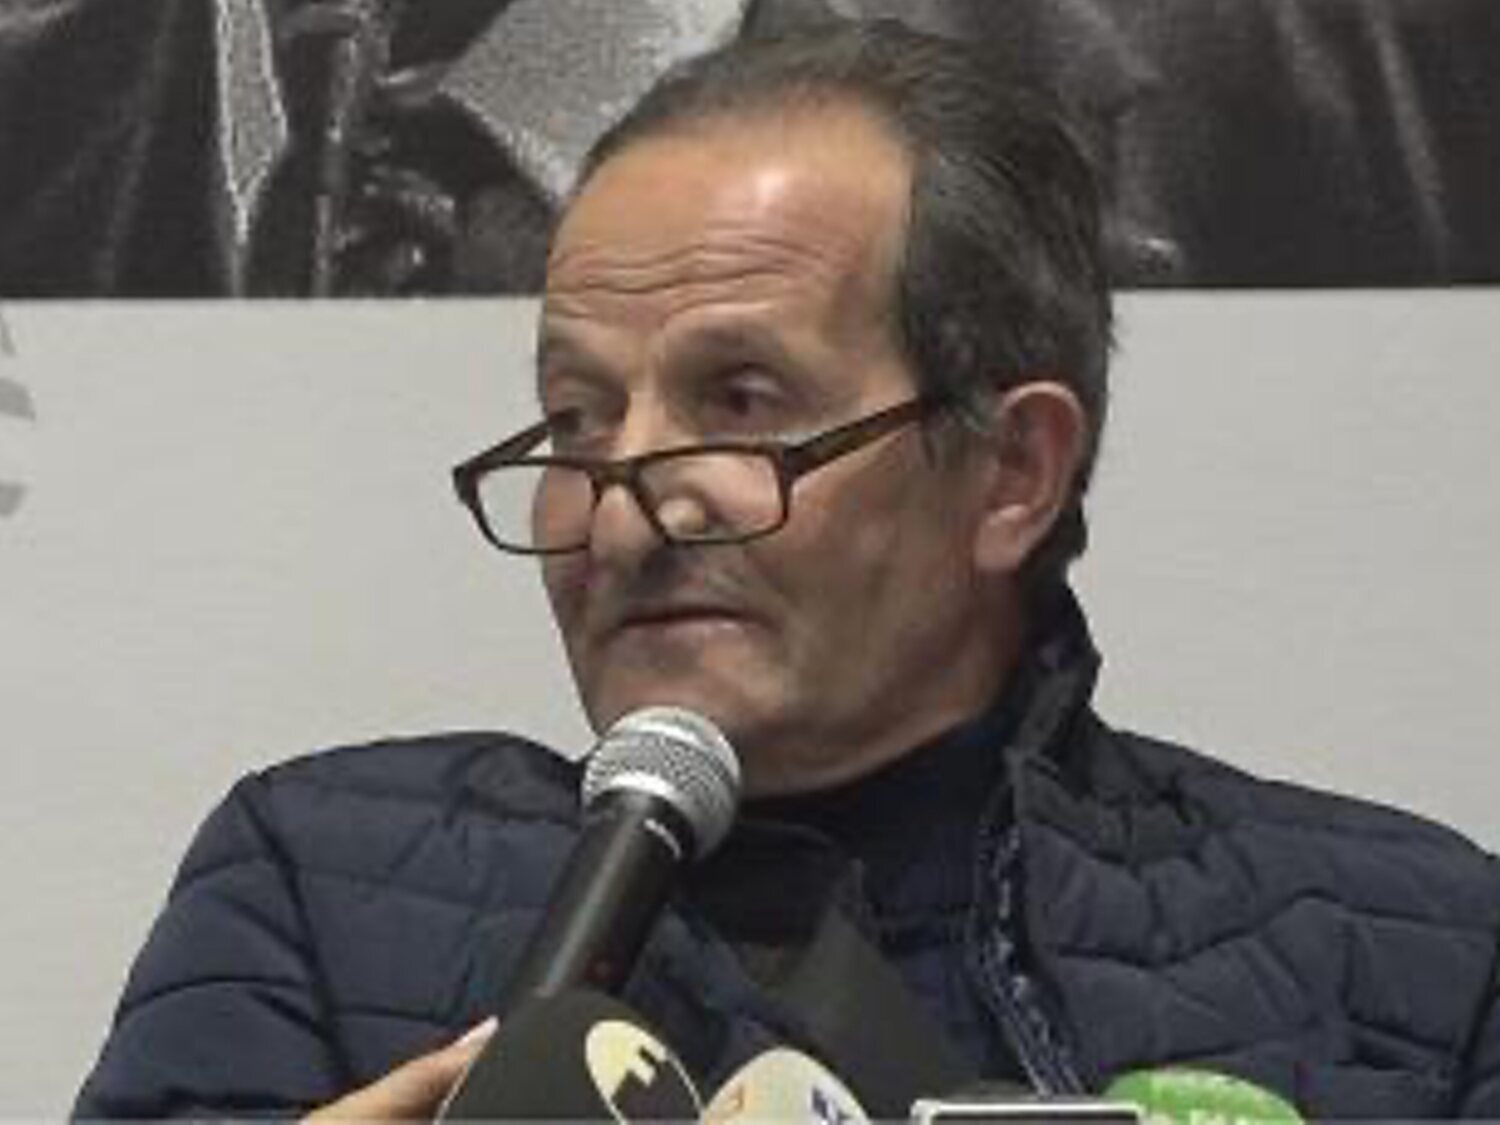 Absuelto en Italia tras pasar 33 años encarcelado por error: "No siento odio"